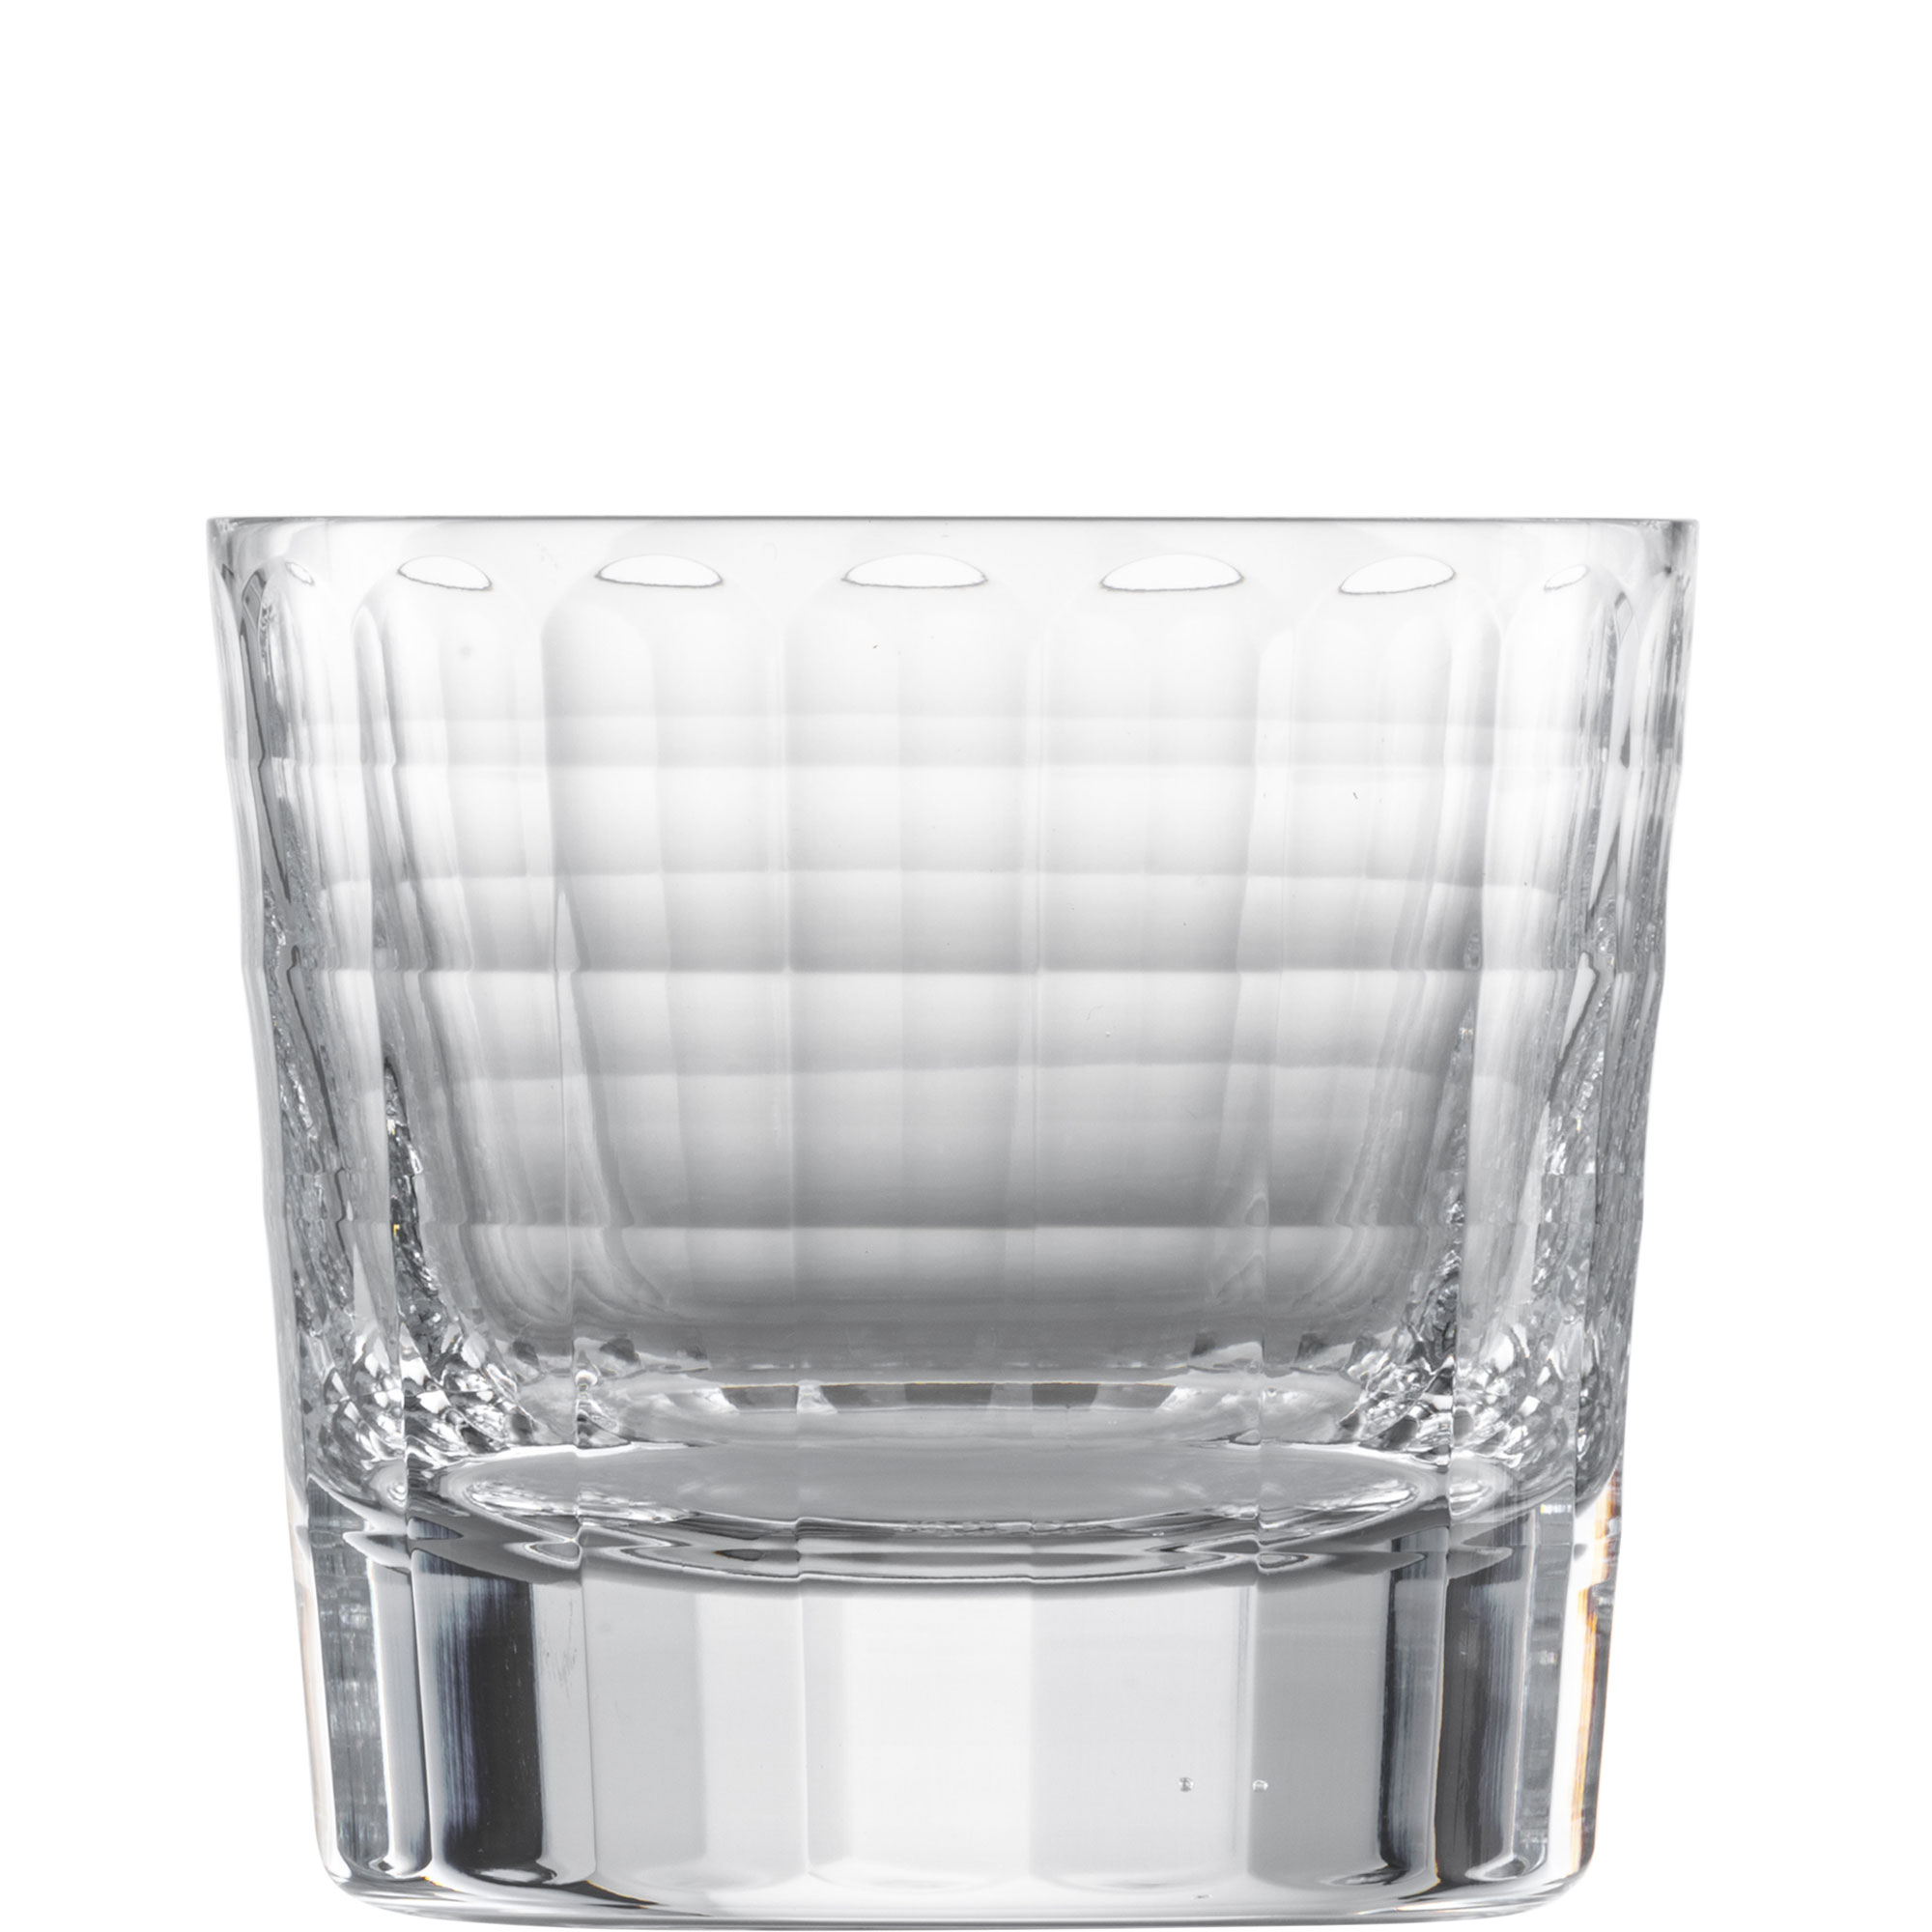 Whiskyglas Hommage Carat, Zwiesel Glas - 288ml